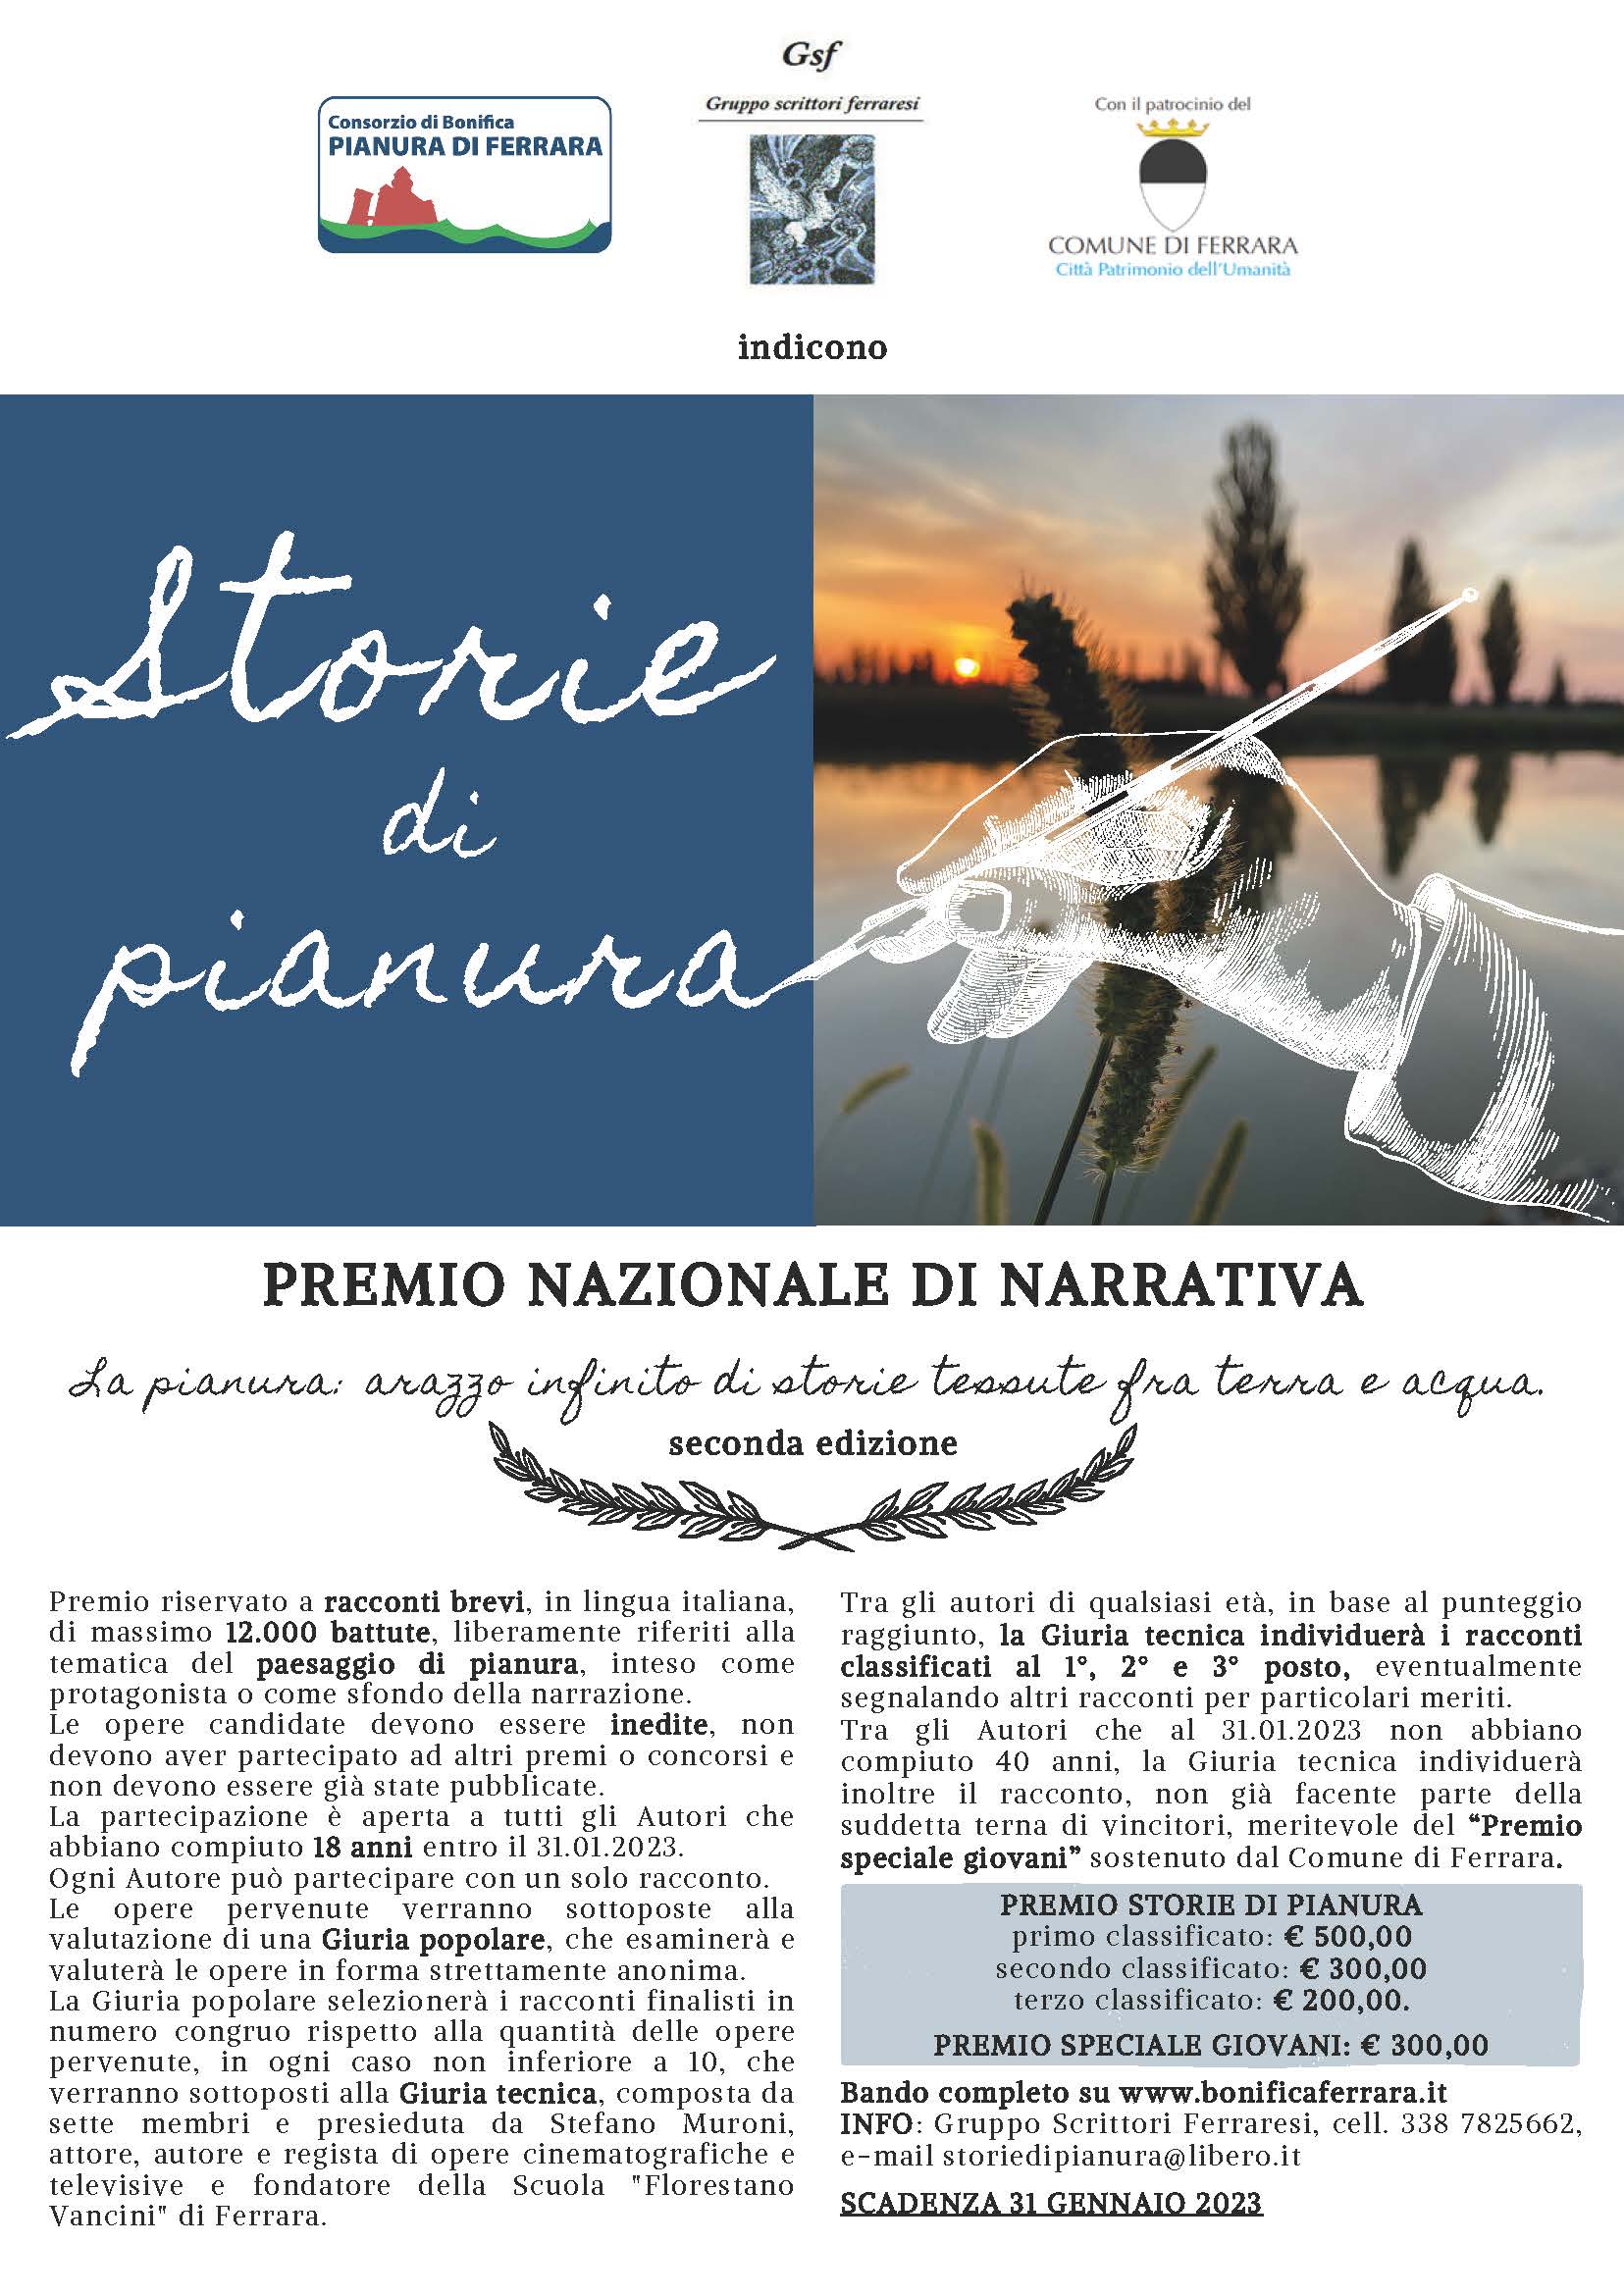 Al via la seconda edizione del Premio nazionale di narrativa "Storie di Pianura"